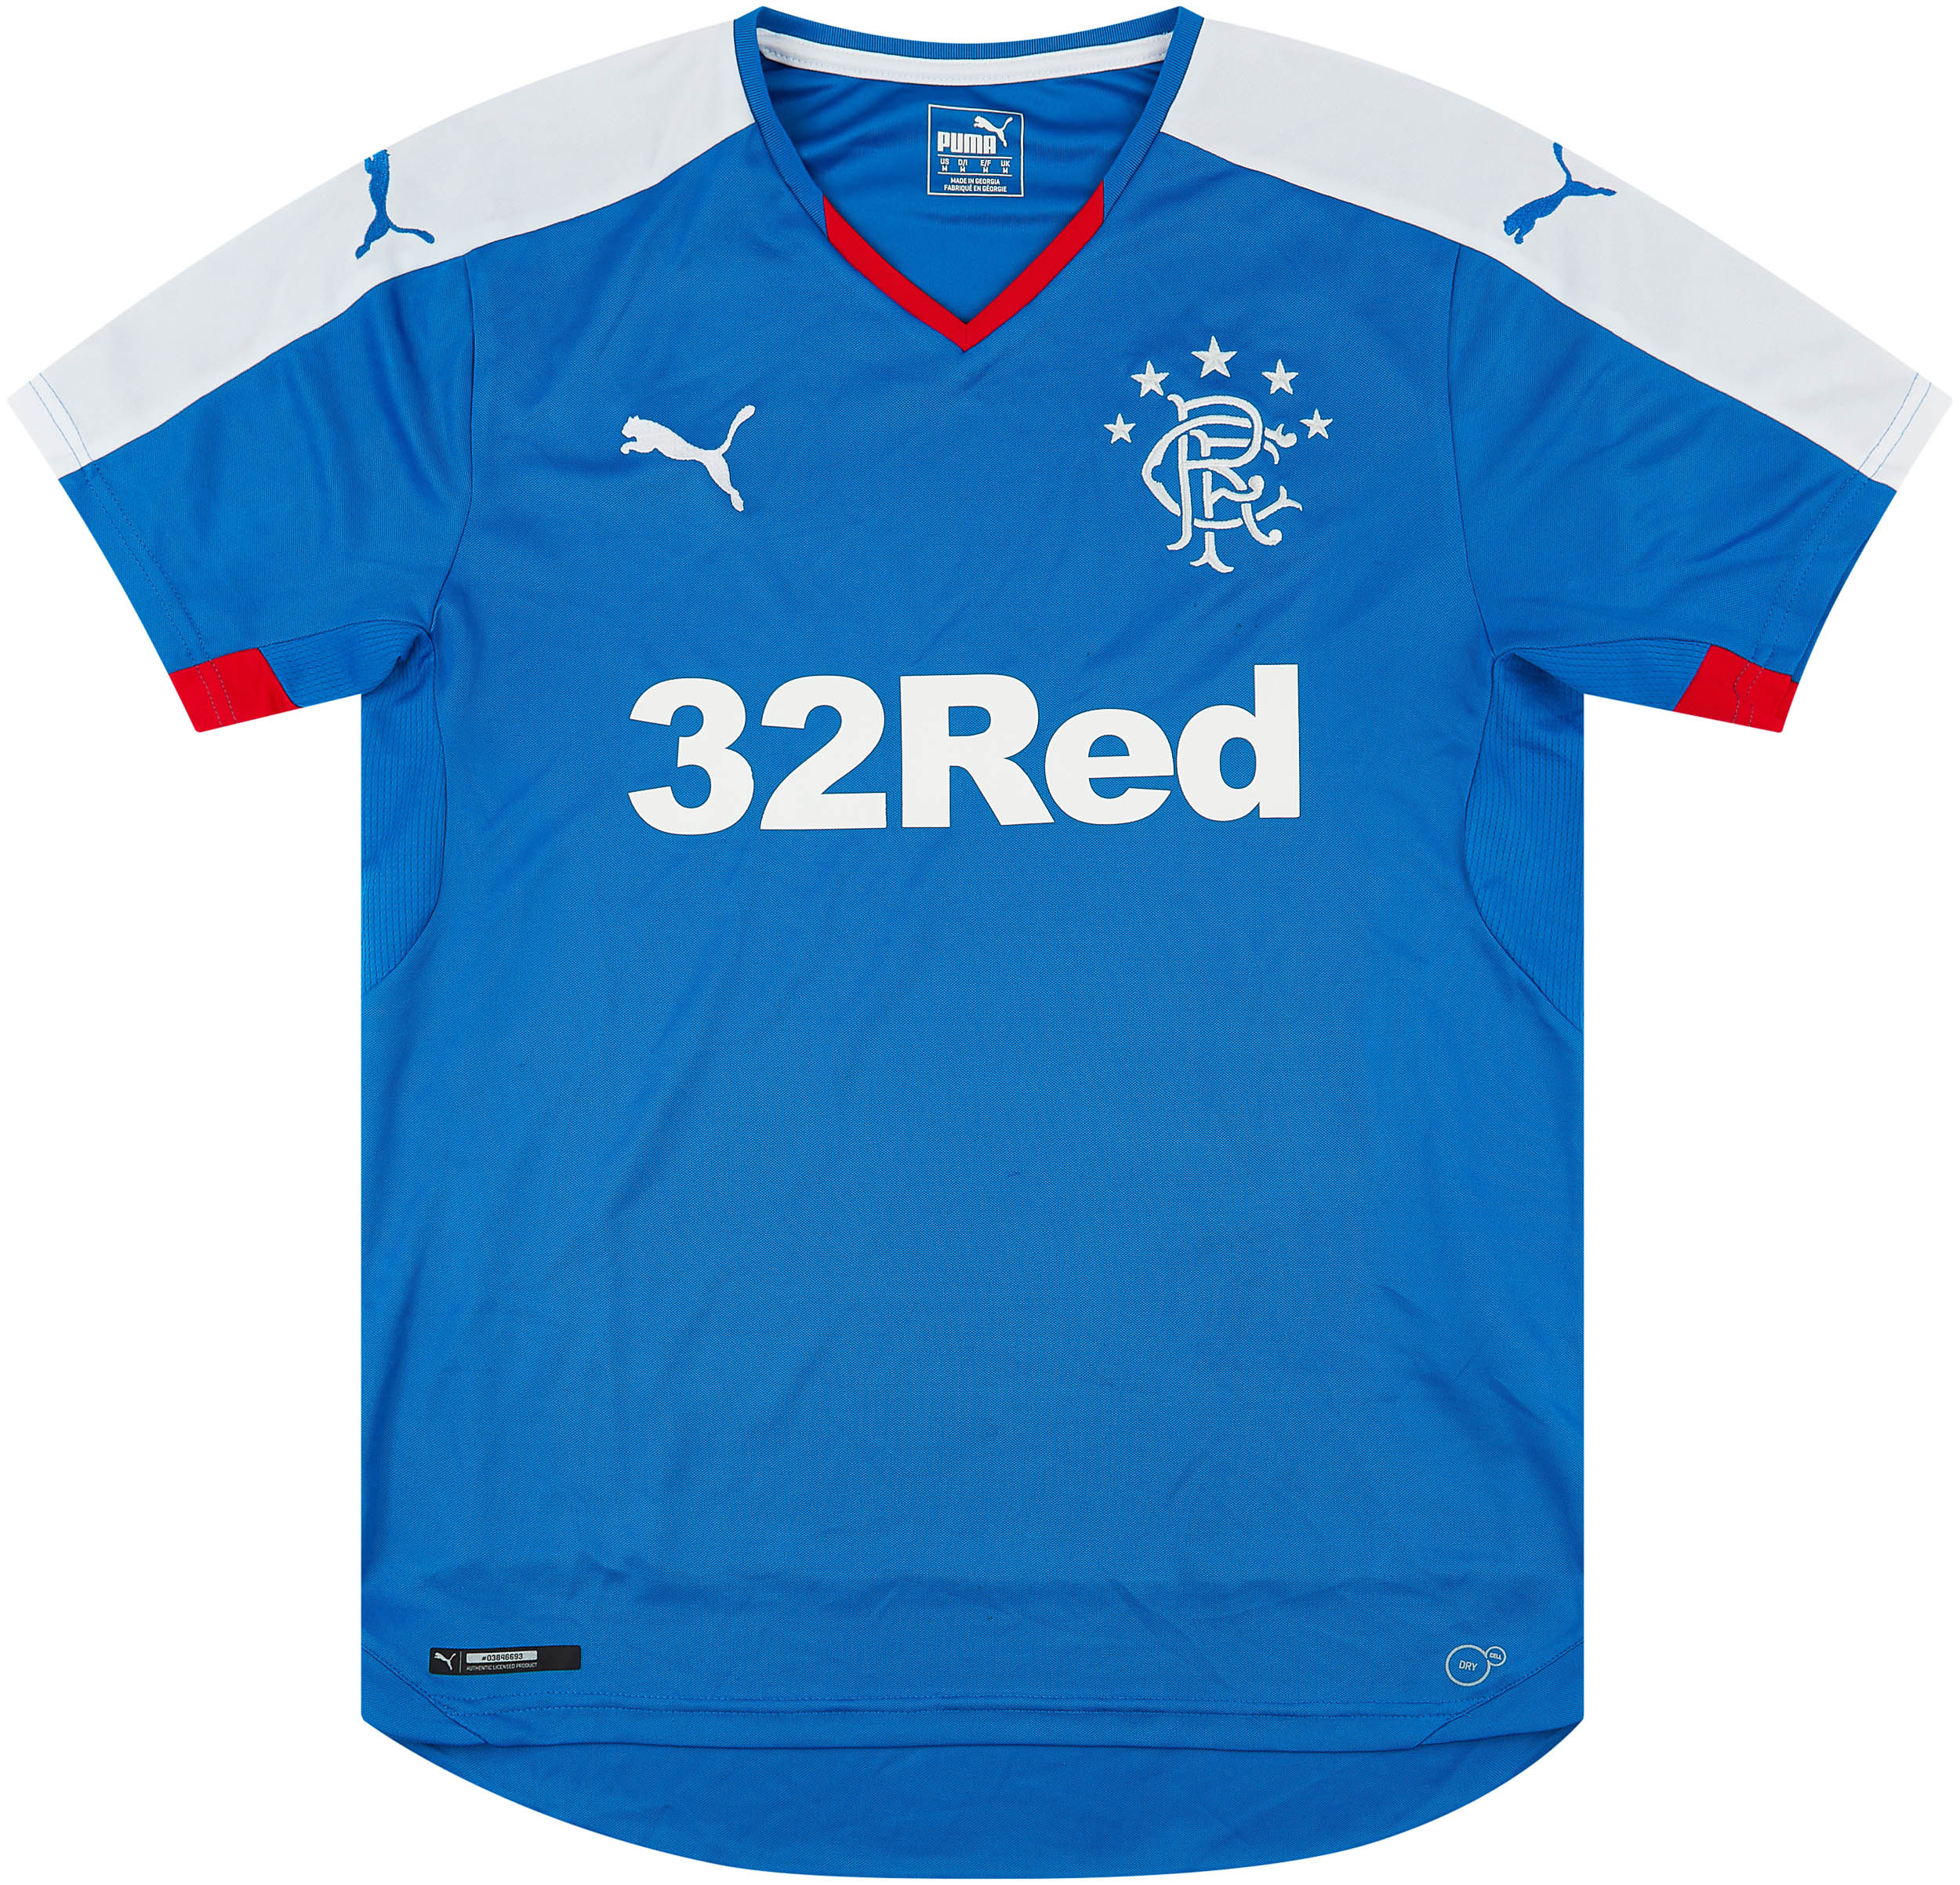 2015-16 Rangers Home Shirt - 8/10 - ()